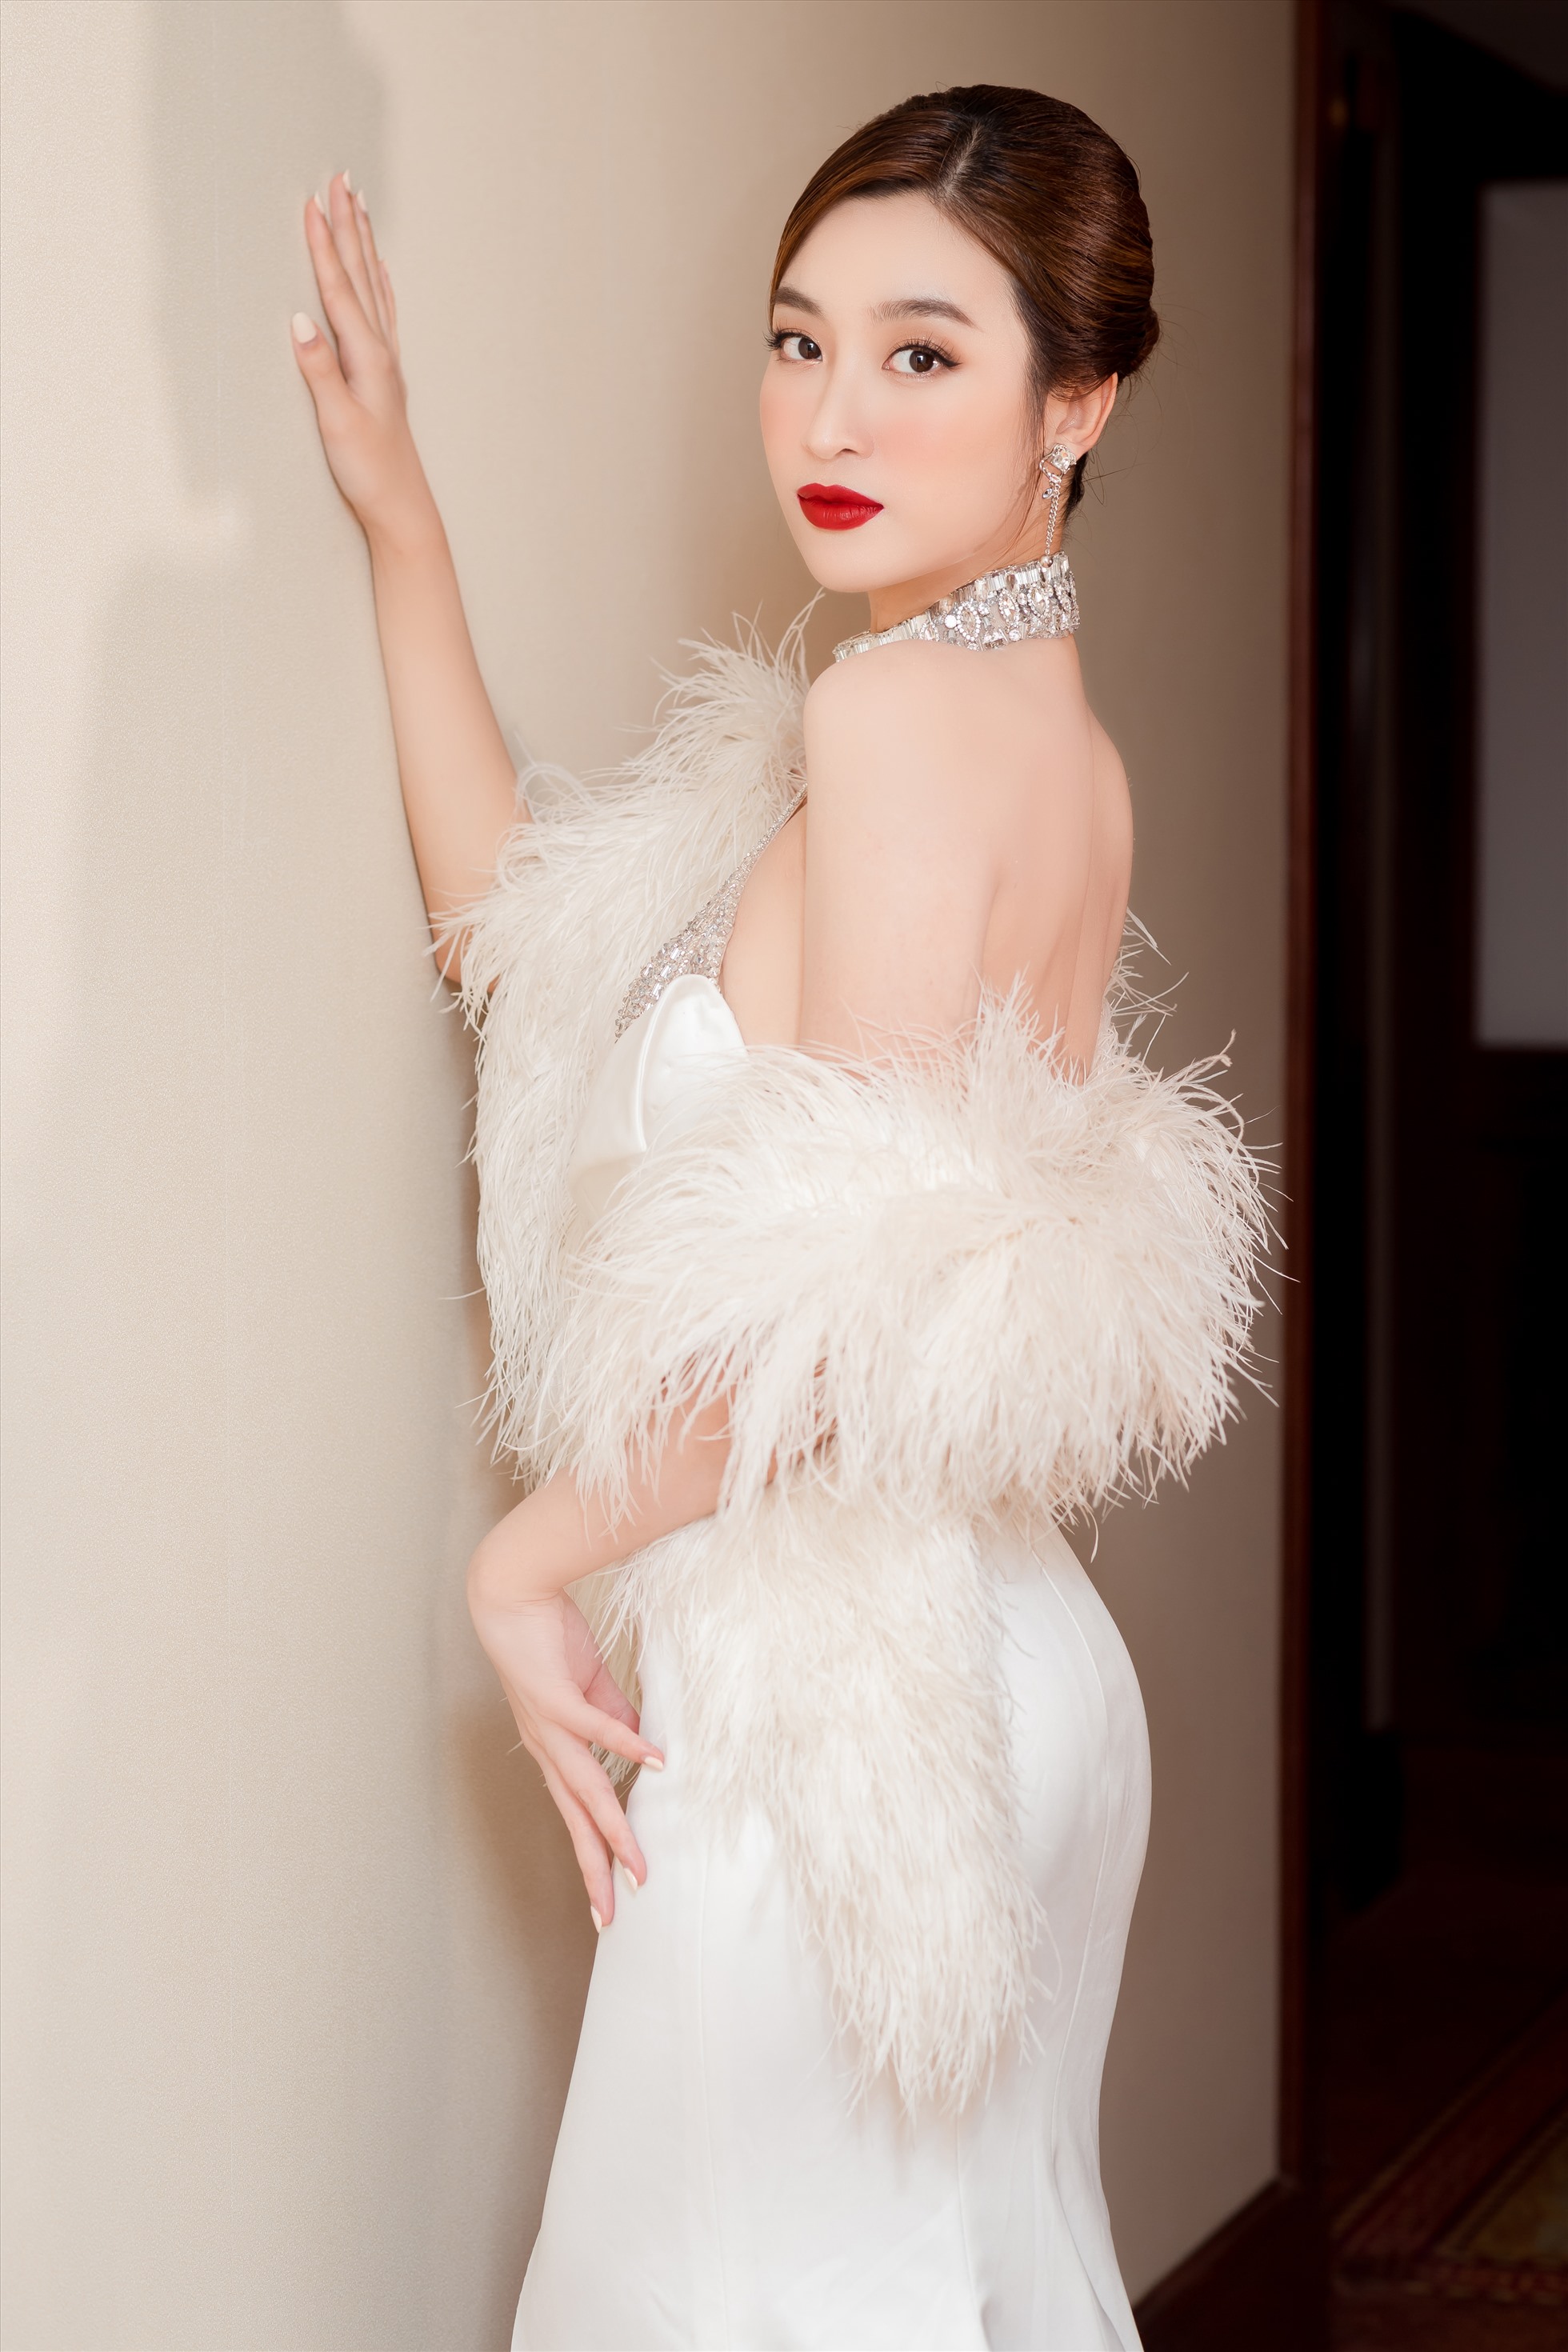 Hãy cùng chiêm ngưỡng ảnh cưới ngọt ngào của Hoa hậu Đỗ Mỹ Linh, người đẹp sở hữu nụ cười rạng ngời và vóc dáng hoàn hảo trong ngày trọng đại của cuộc đời.